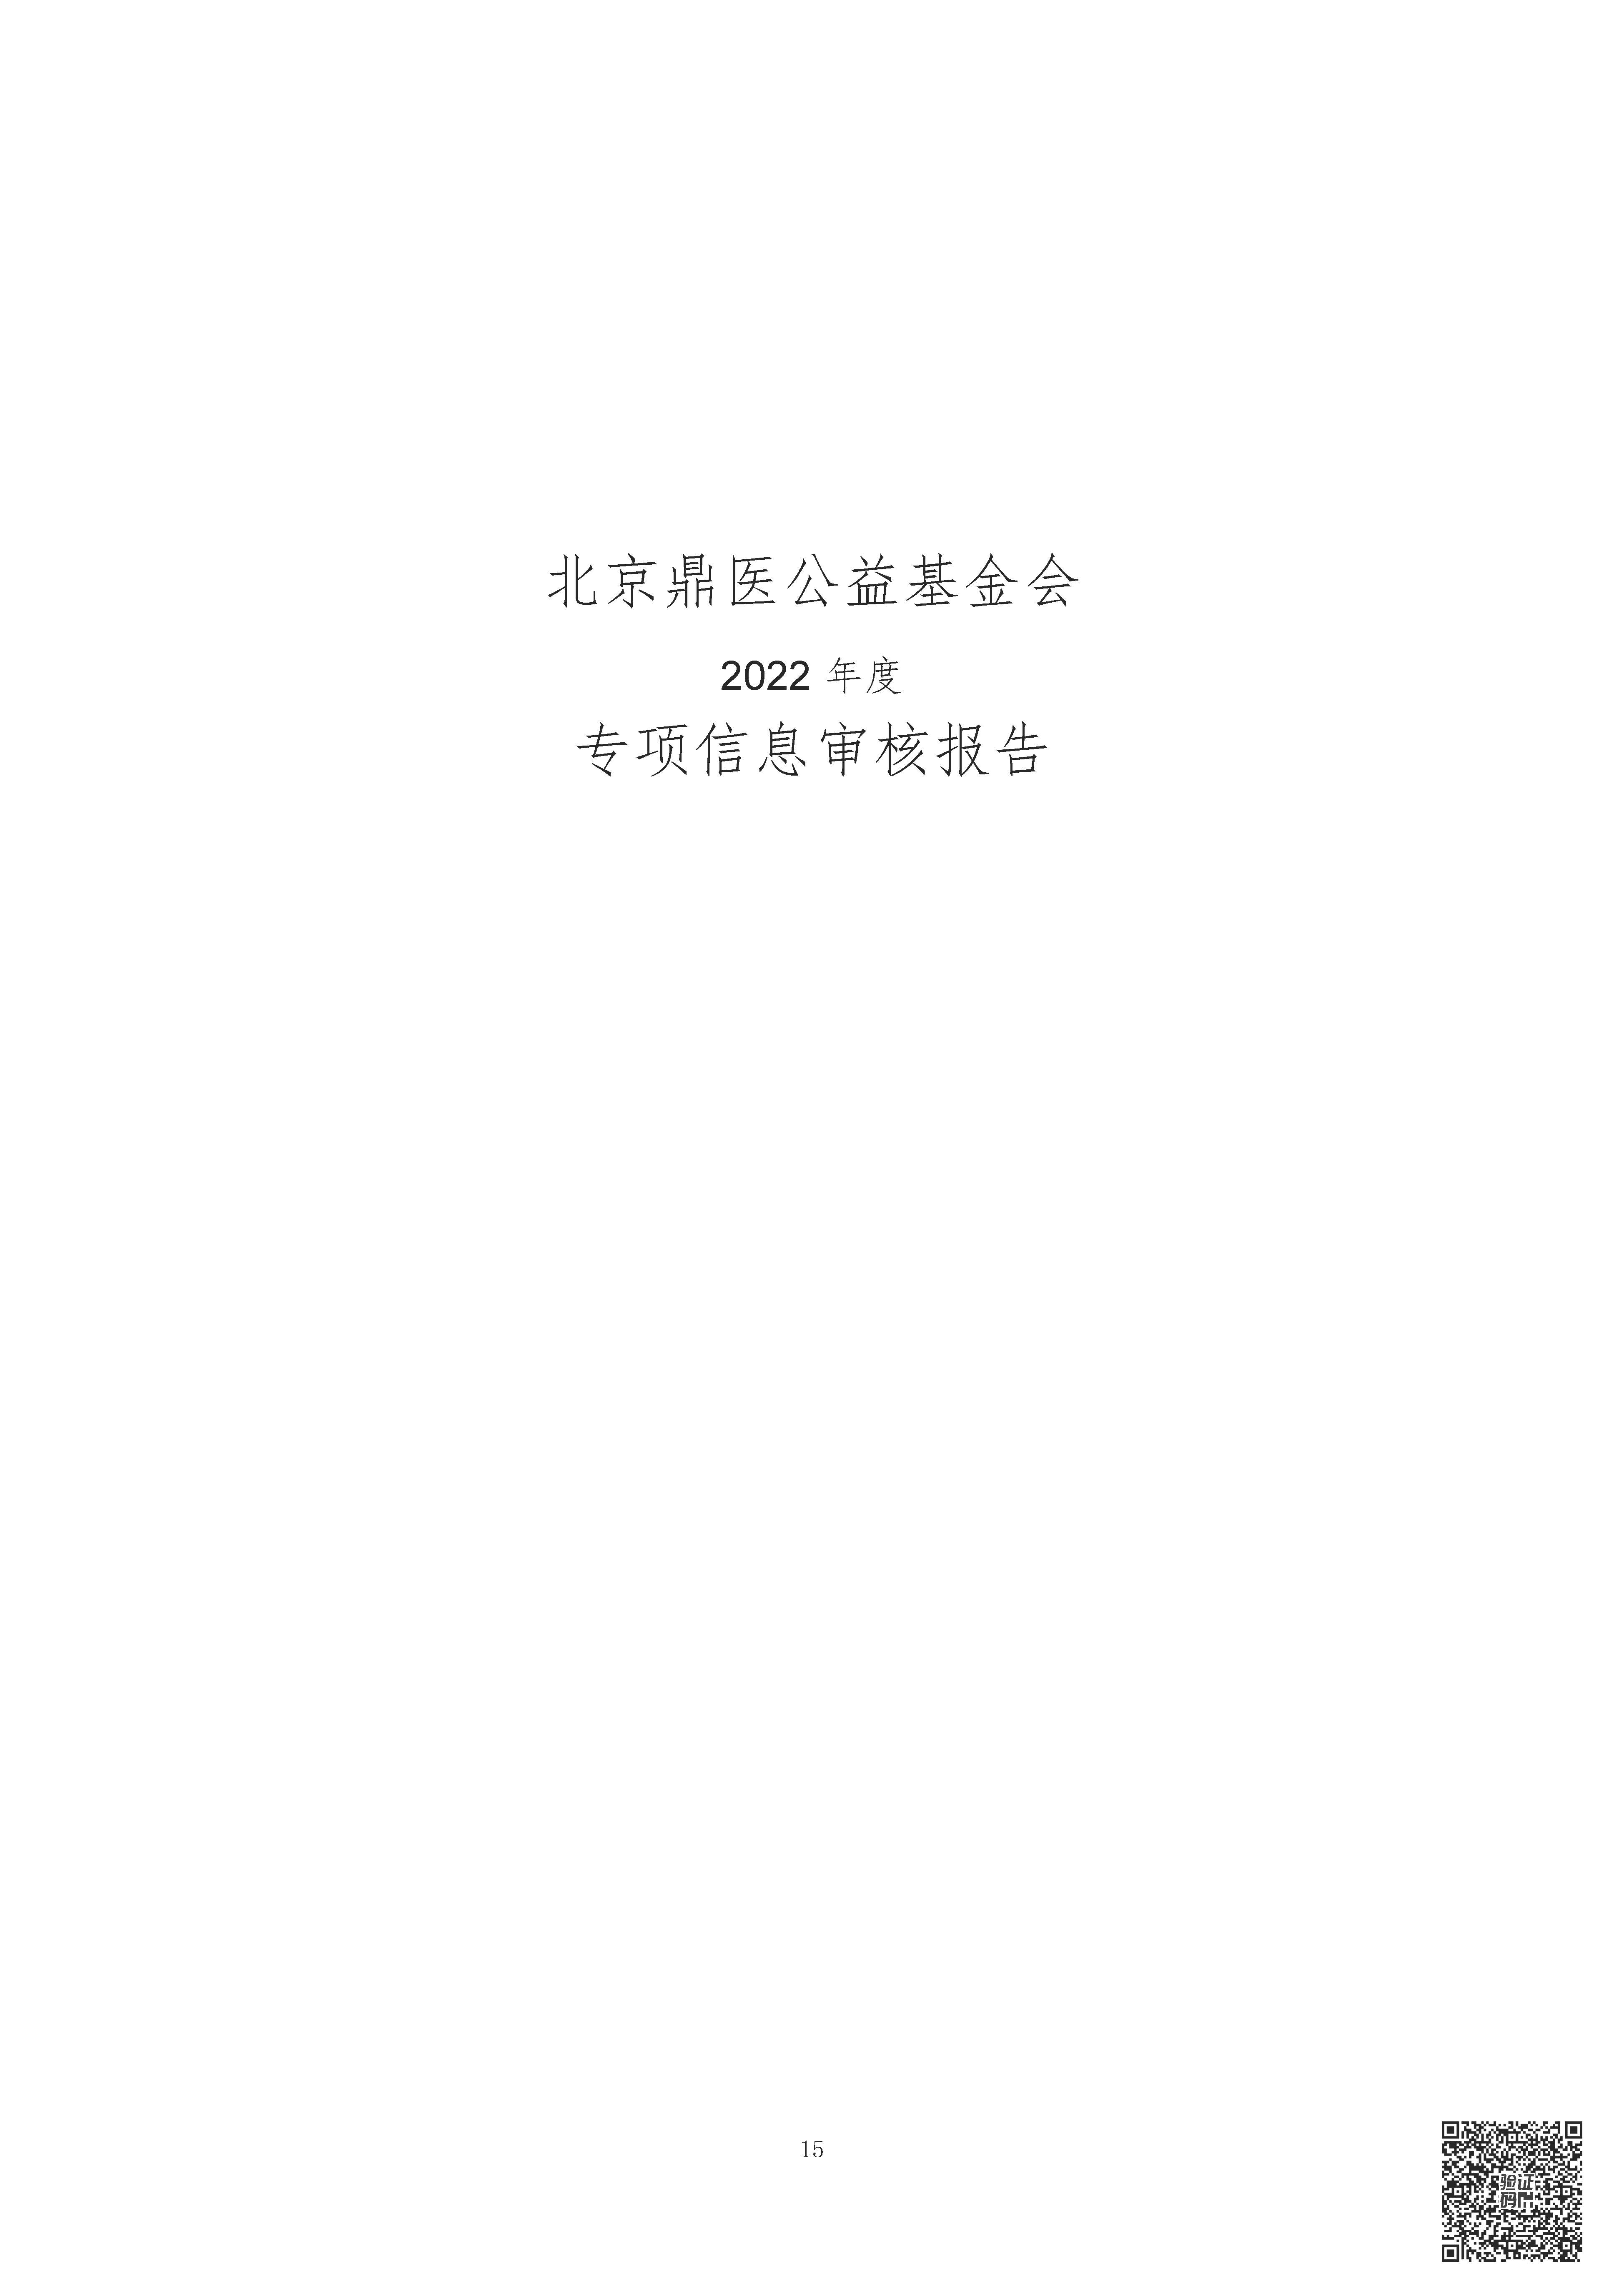 2022年审计报告-北京鼎医公益基金会_页面_16